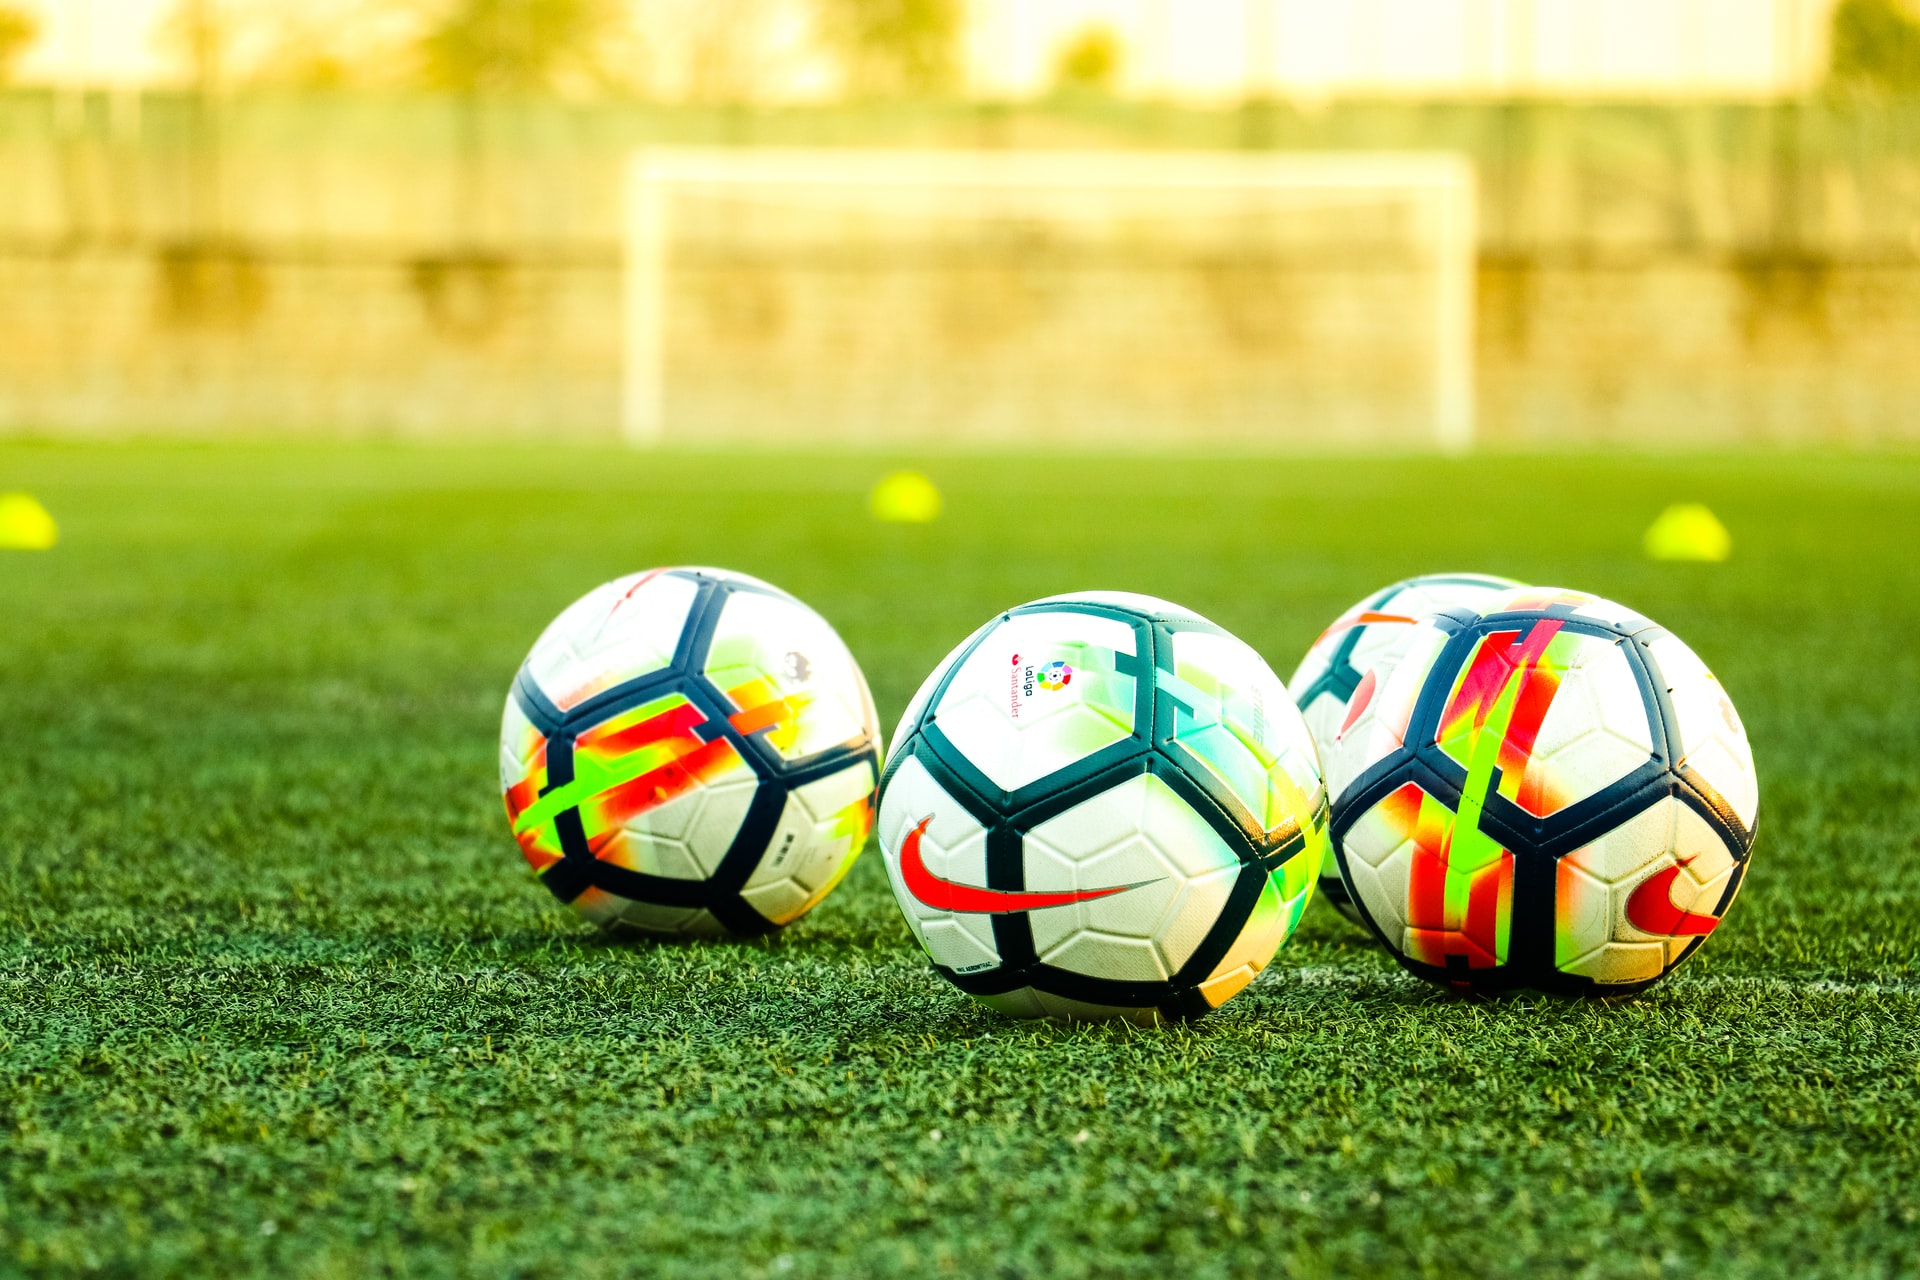 Bóng đá là một trong những môn thể thao dễ gặp chấn thương nhất